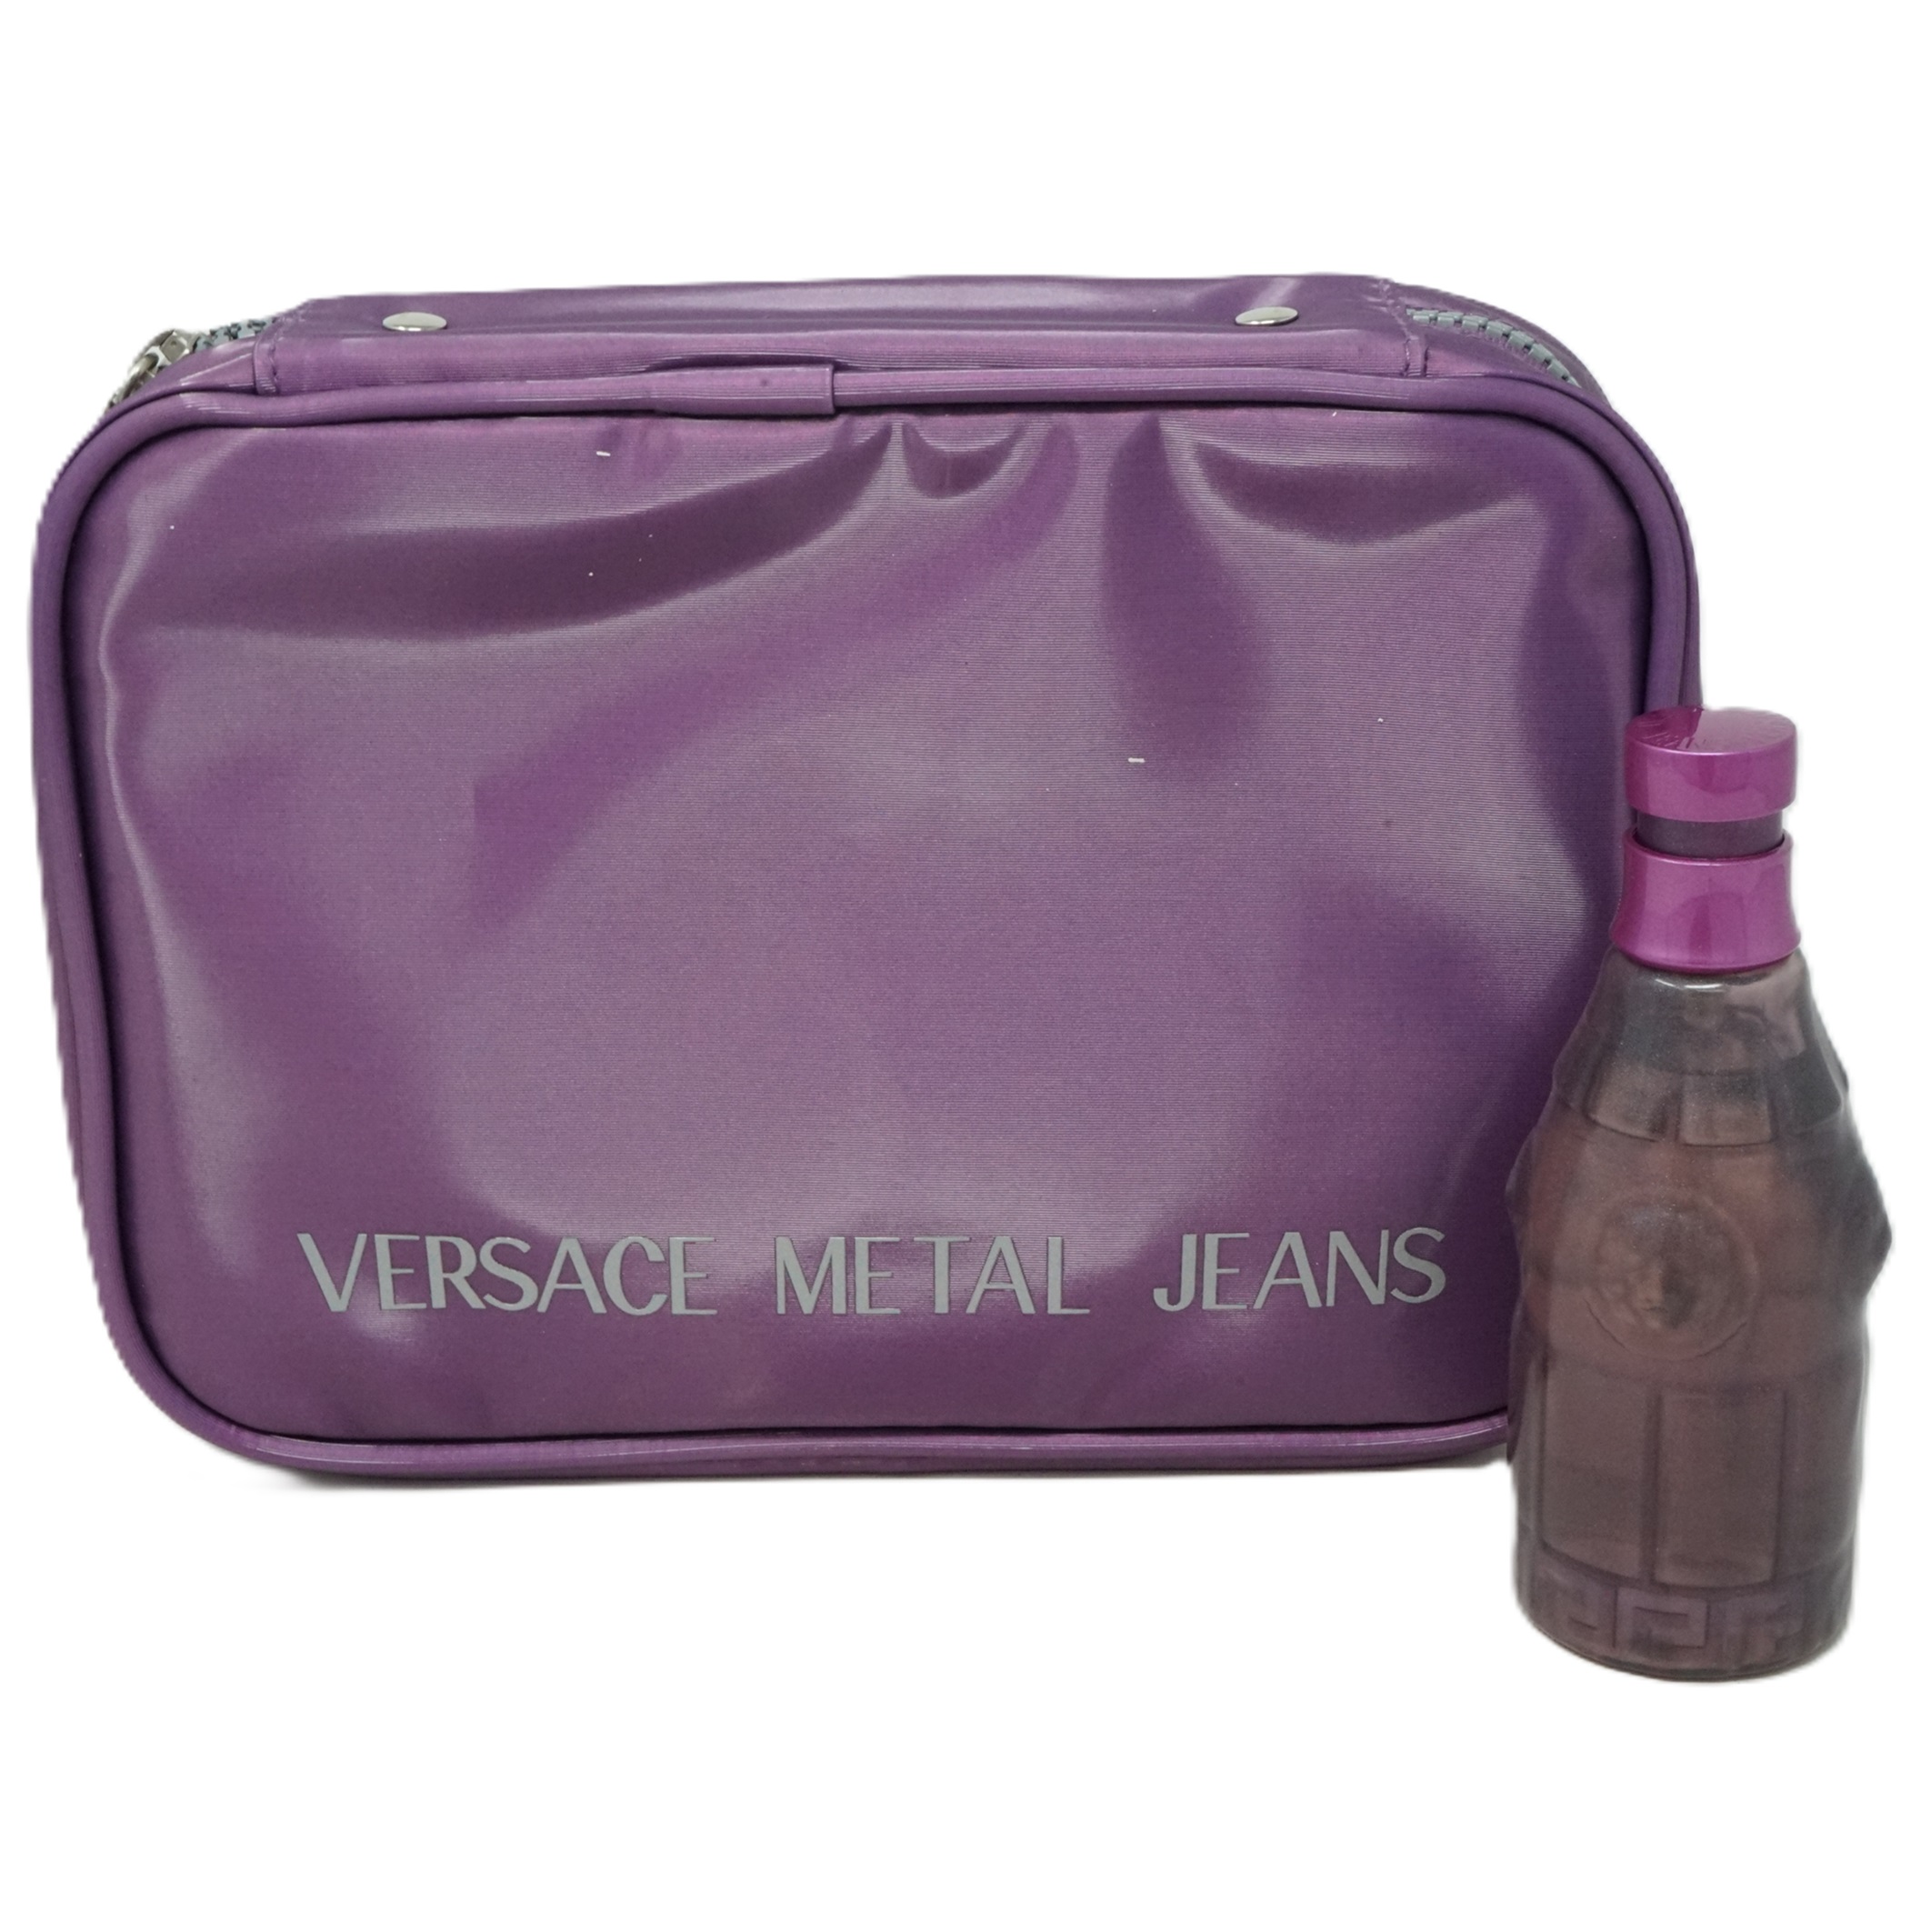 Versace Metal Jeans Woman Coffret Eau de Toilette Spray 75ml + Planner Bag